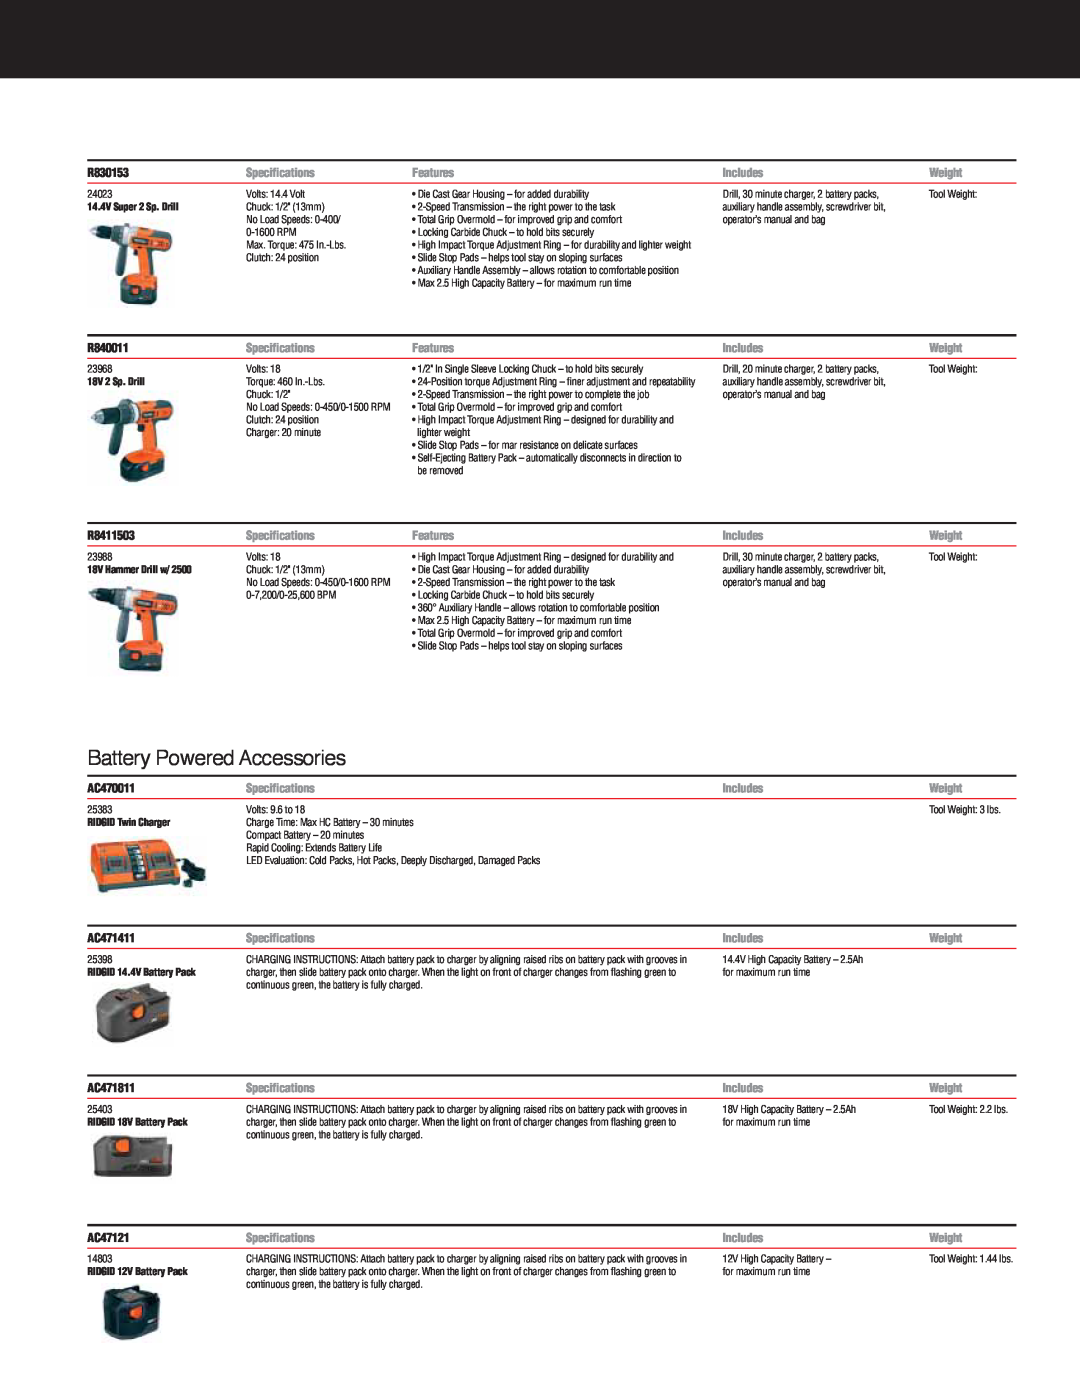 RIDGID R932, R9213 Battery Powered Accessories, R830153, R840011, R8411503, AC470011, AC471411, AC471811, AC47121 